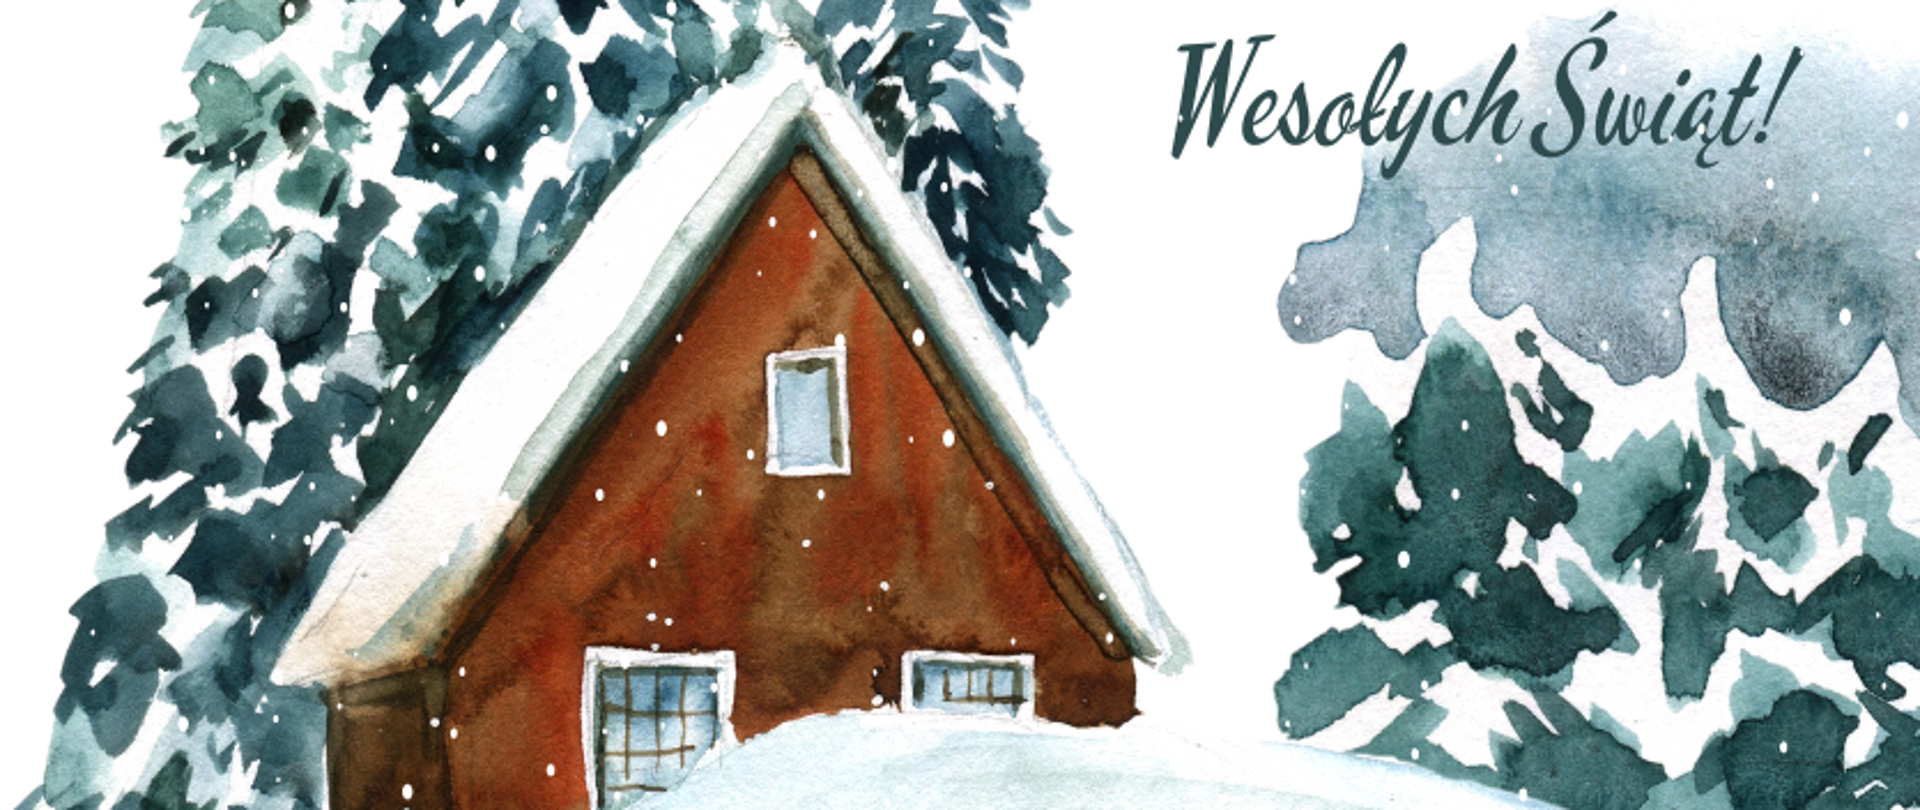 grafika: życzenia świąteczne od dyrekcji i pracowników szkoły baletowej. Na rysunku leśny krajobraz przykryty śniegiem, pomiędzy drzewami brązowy domek ze śniegiem na dachu. U góry napis Wesołych Świąt i logo szkoły baletowej.